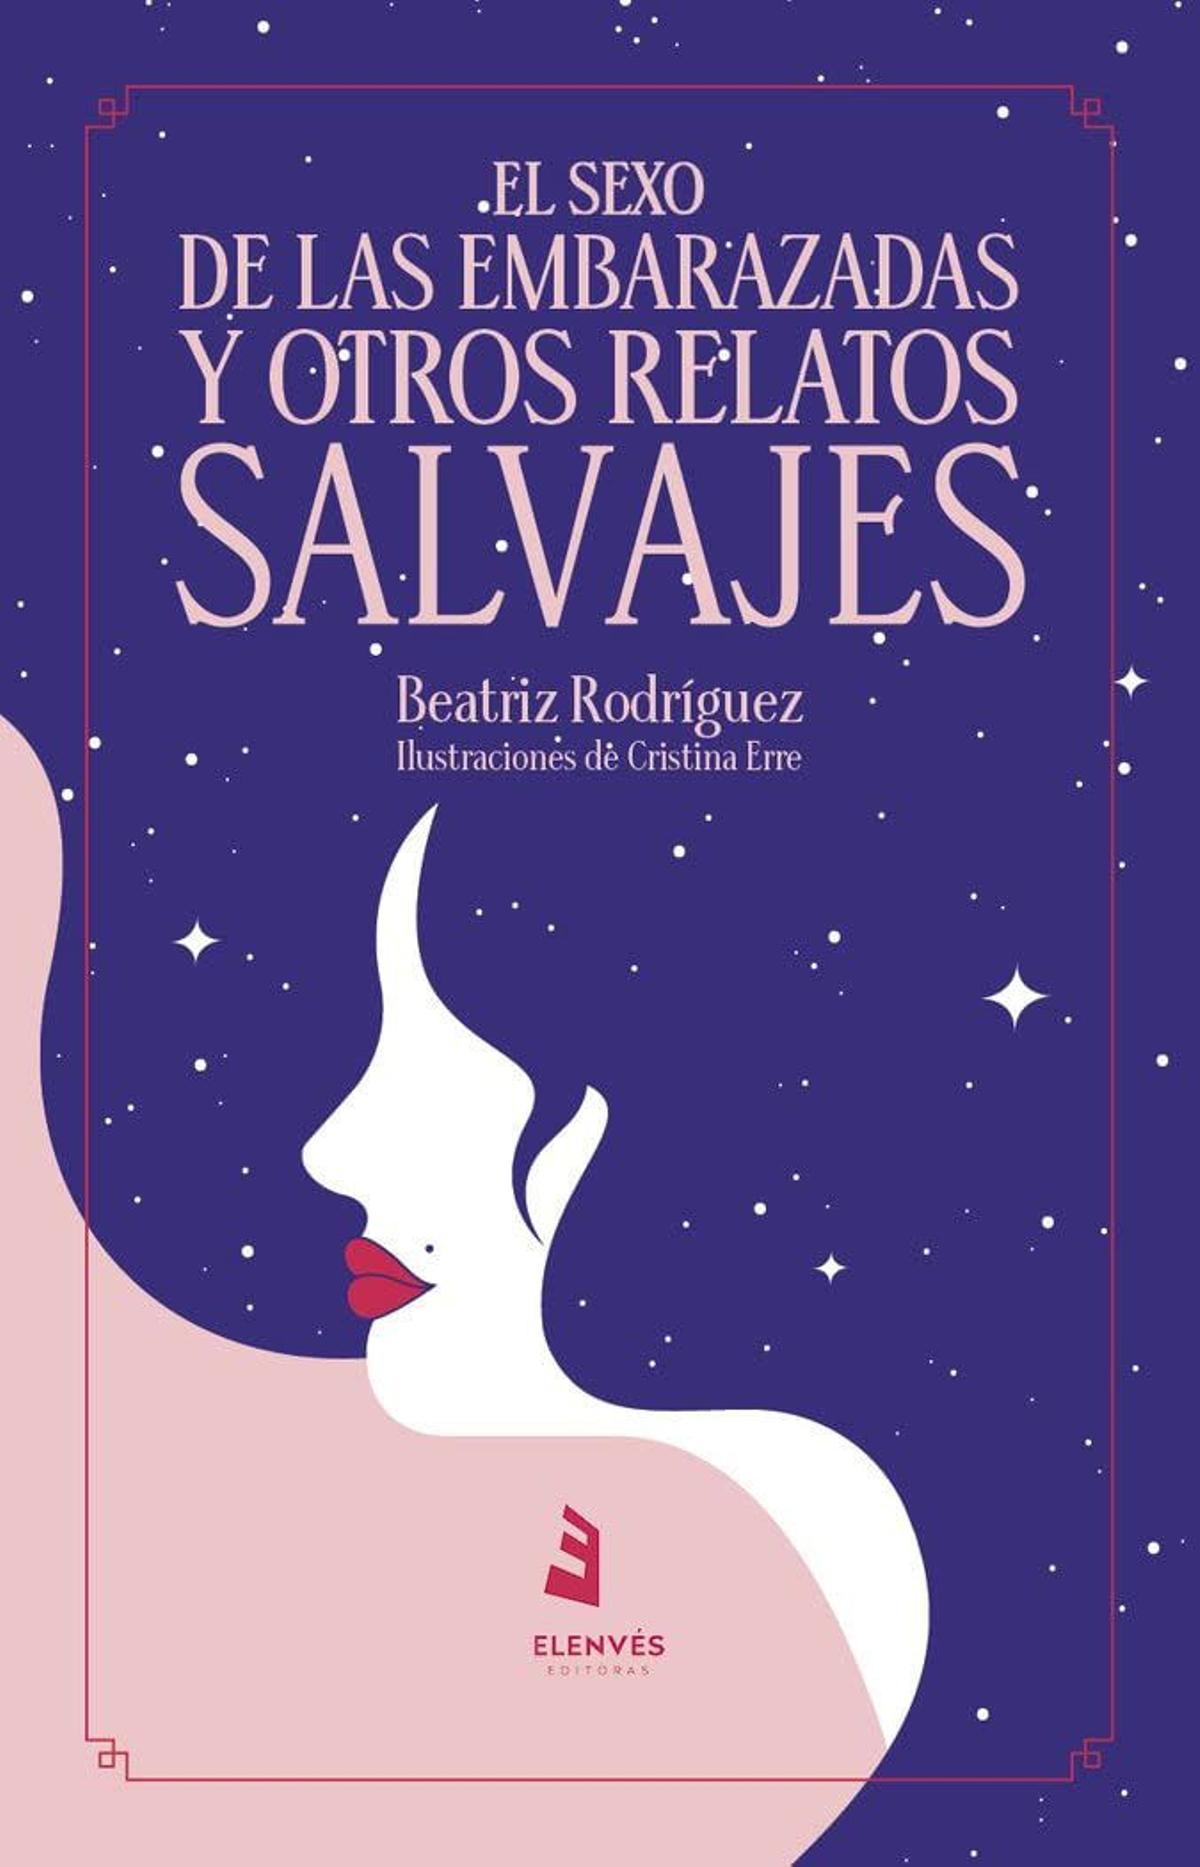 'El sexo de las embarazadas y otros relatos salvajes', de Beatriz Rodríguez